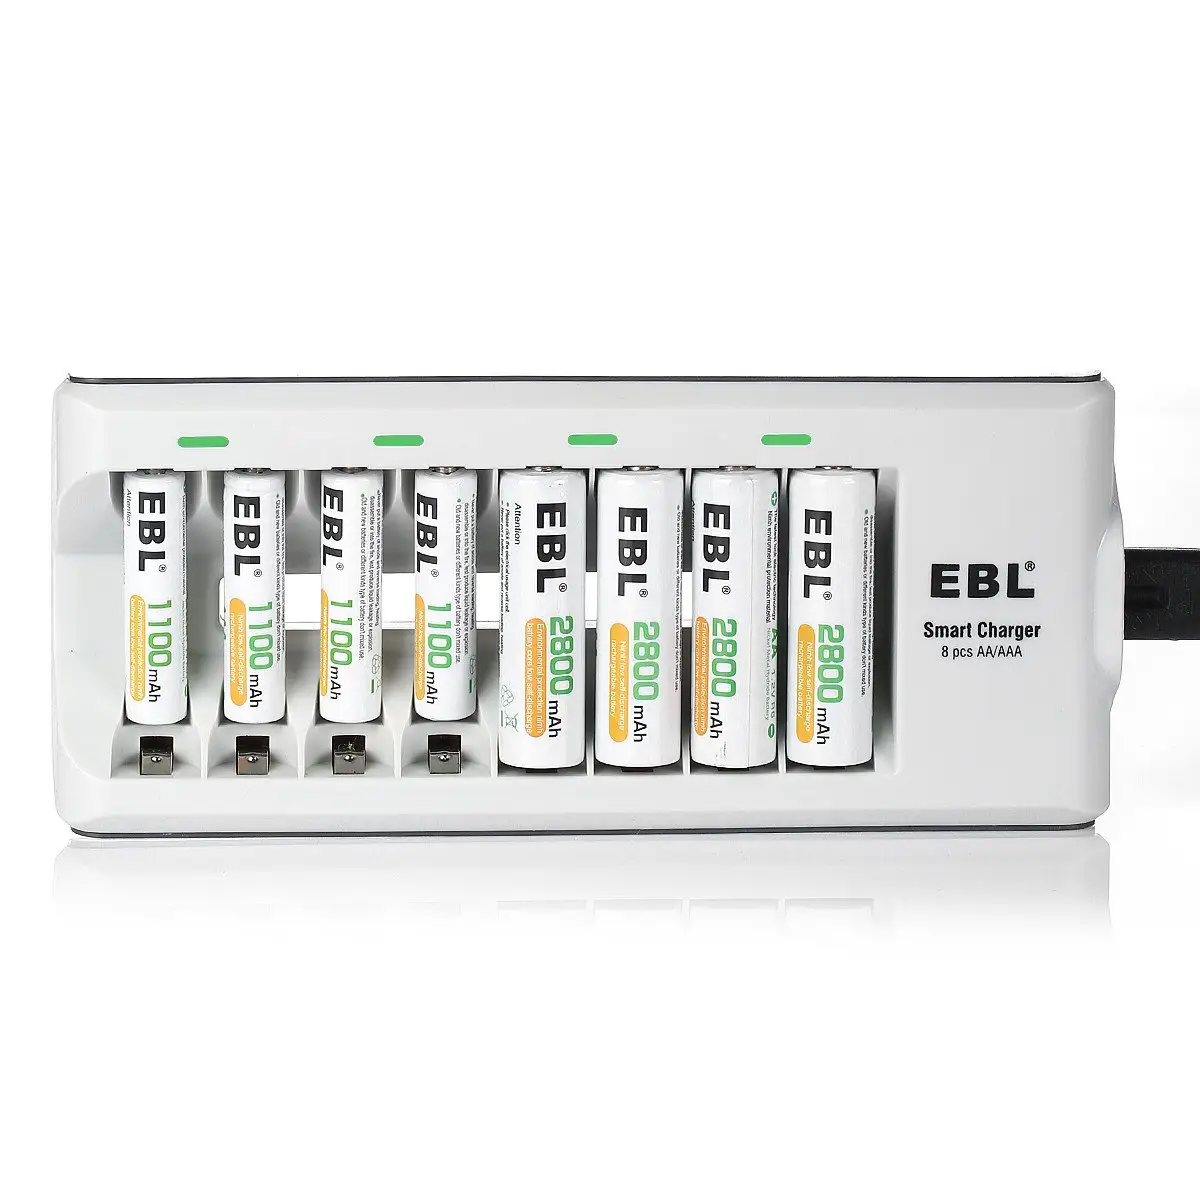 Зарядное устройство для аккумуляторов EBL 8Bay с батареями AA 2800 мА/ч, ААА, аккумуляторные батареи с длительным сроком службы